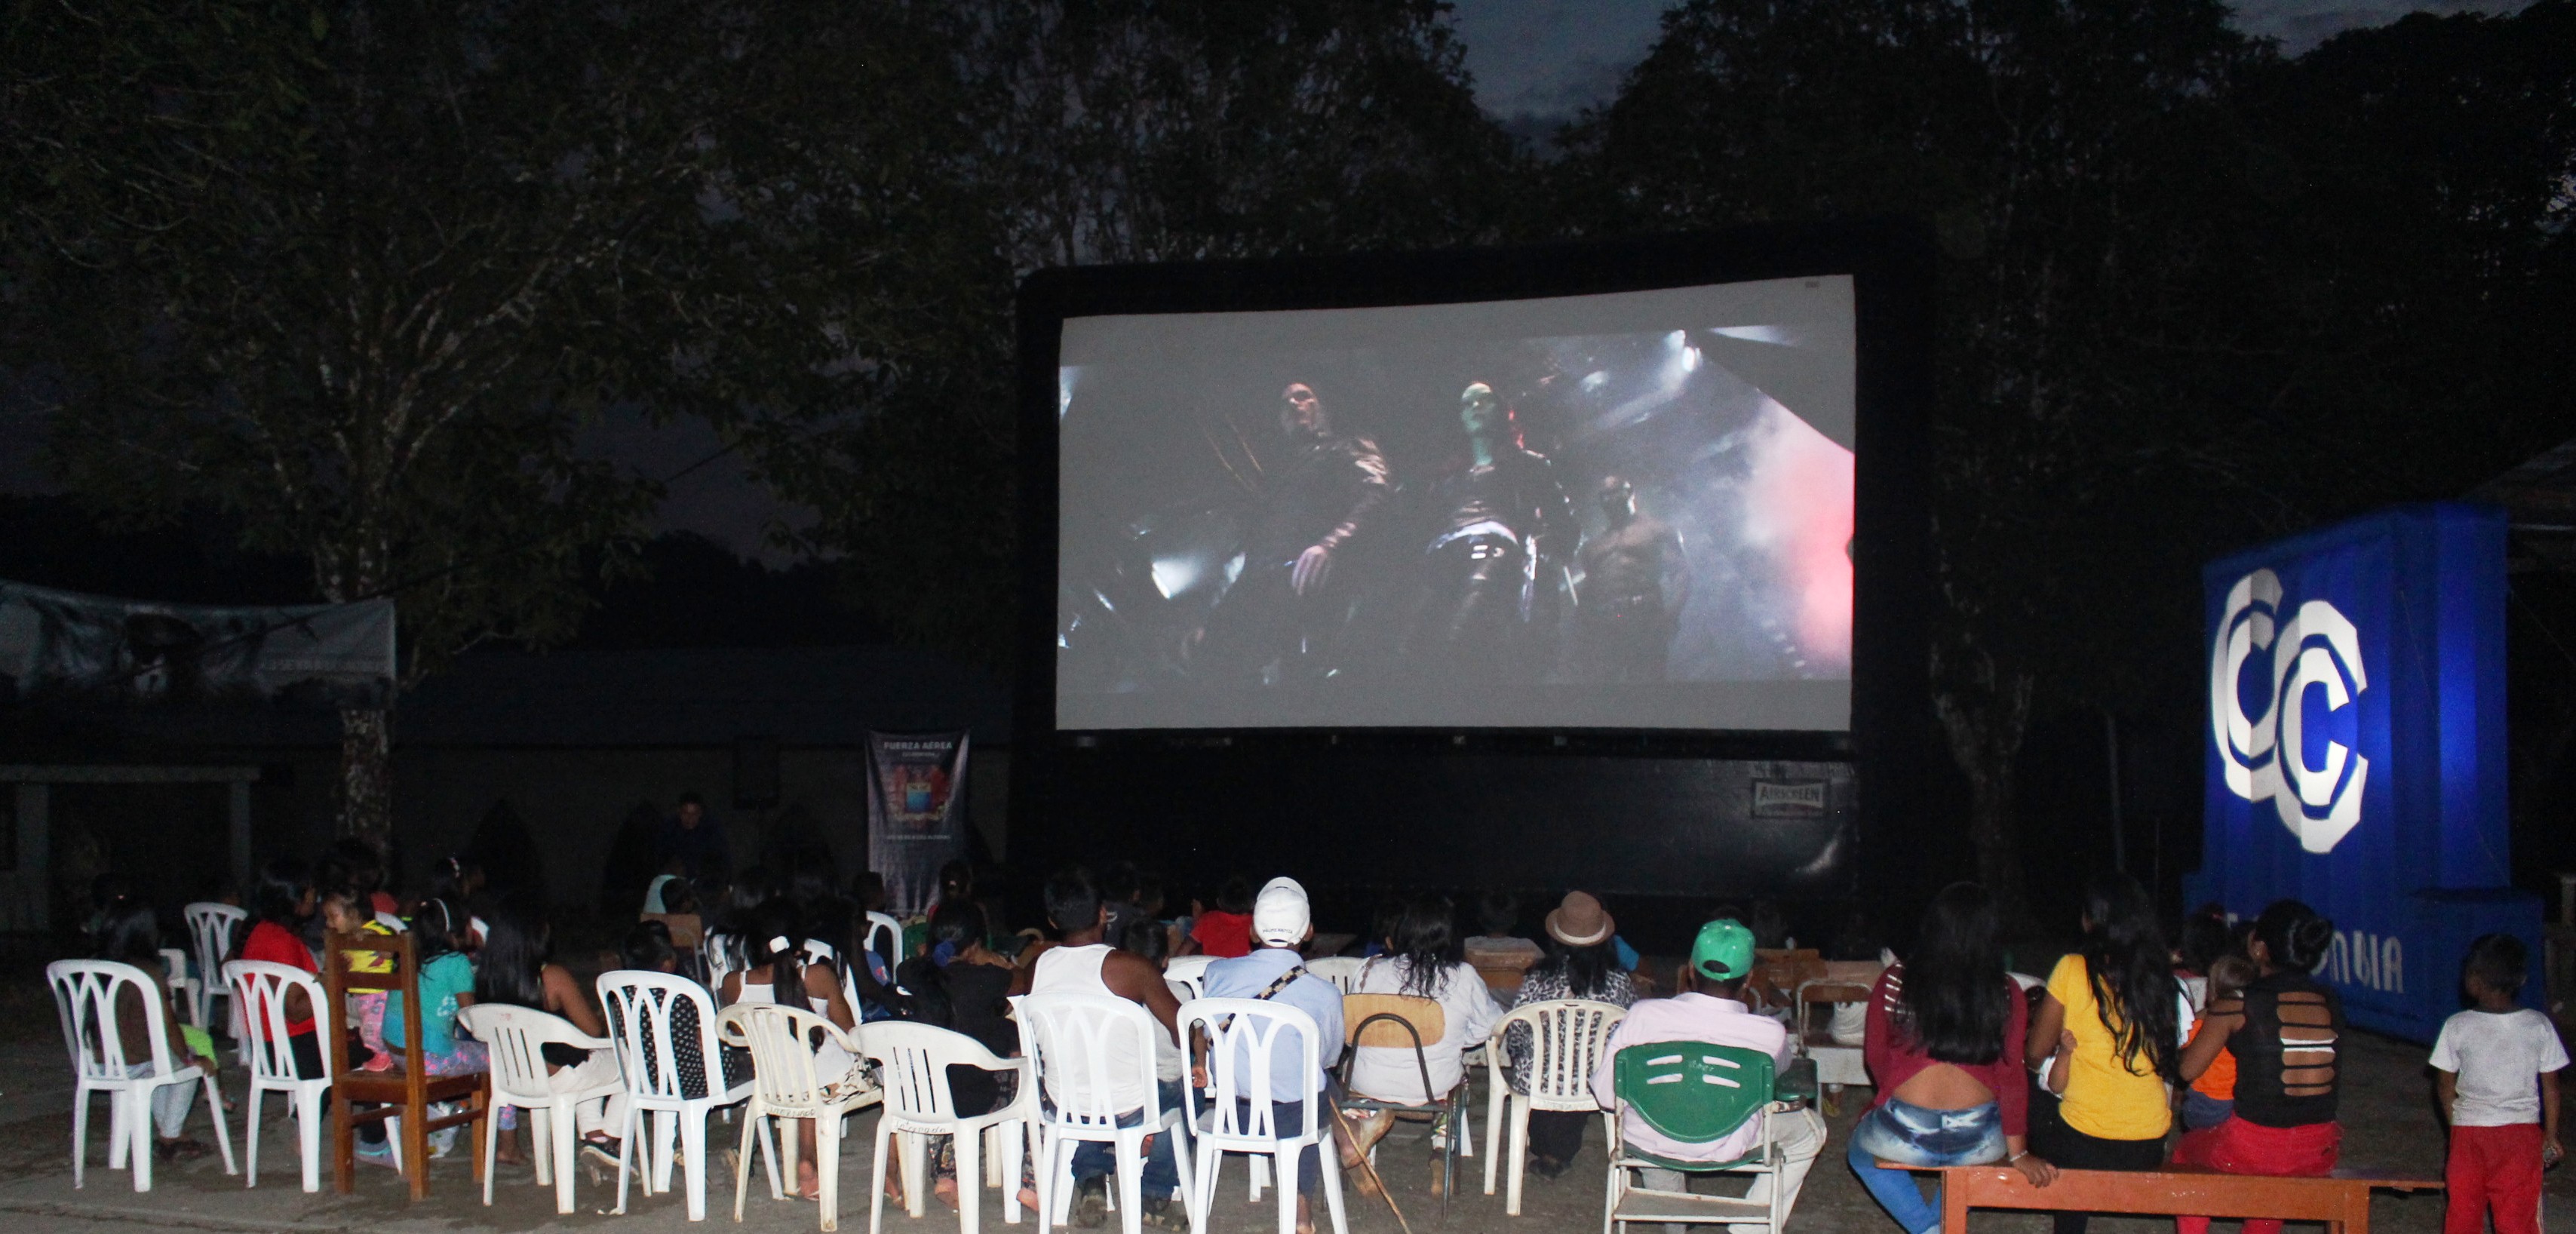 La población de los resguardos indígenas de Araracuara y zonas aledañas se benefició de una tarde de cine